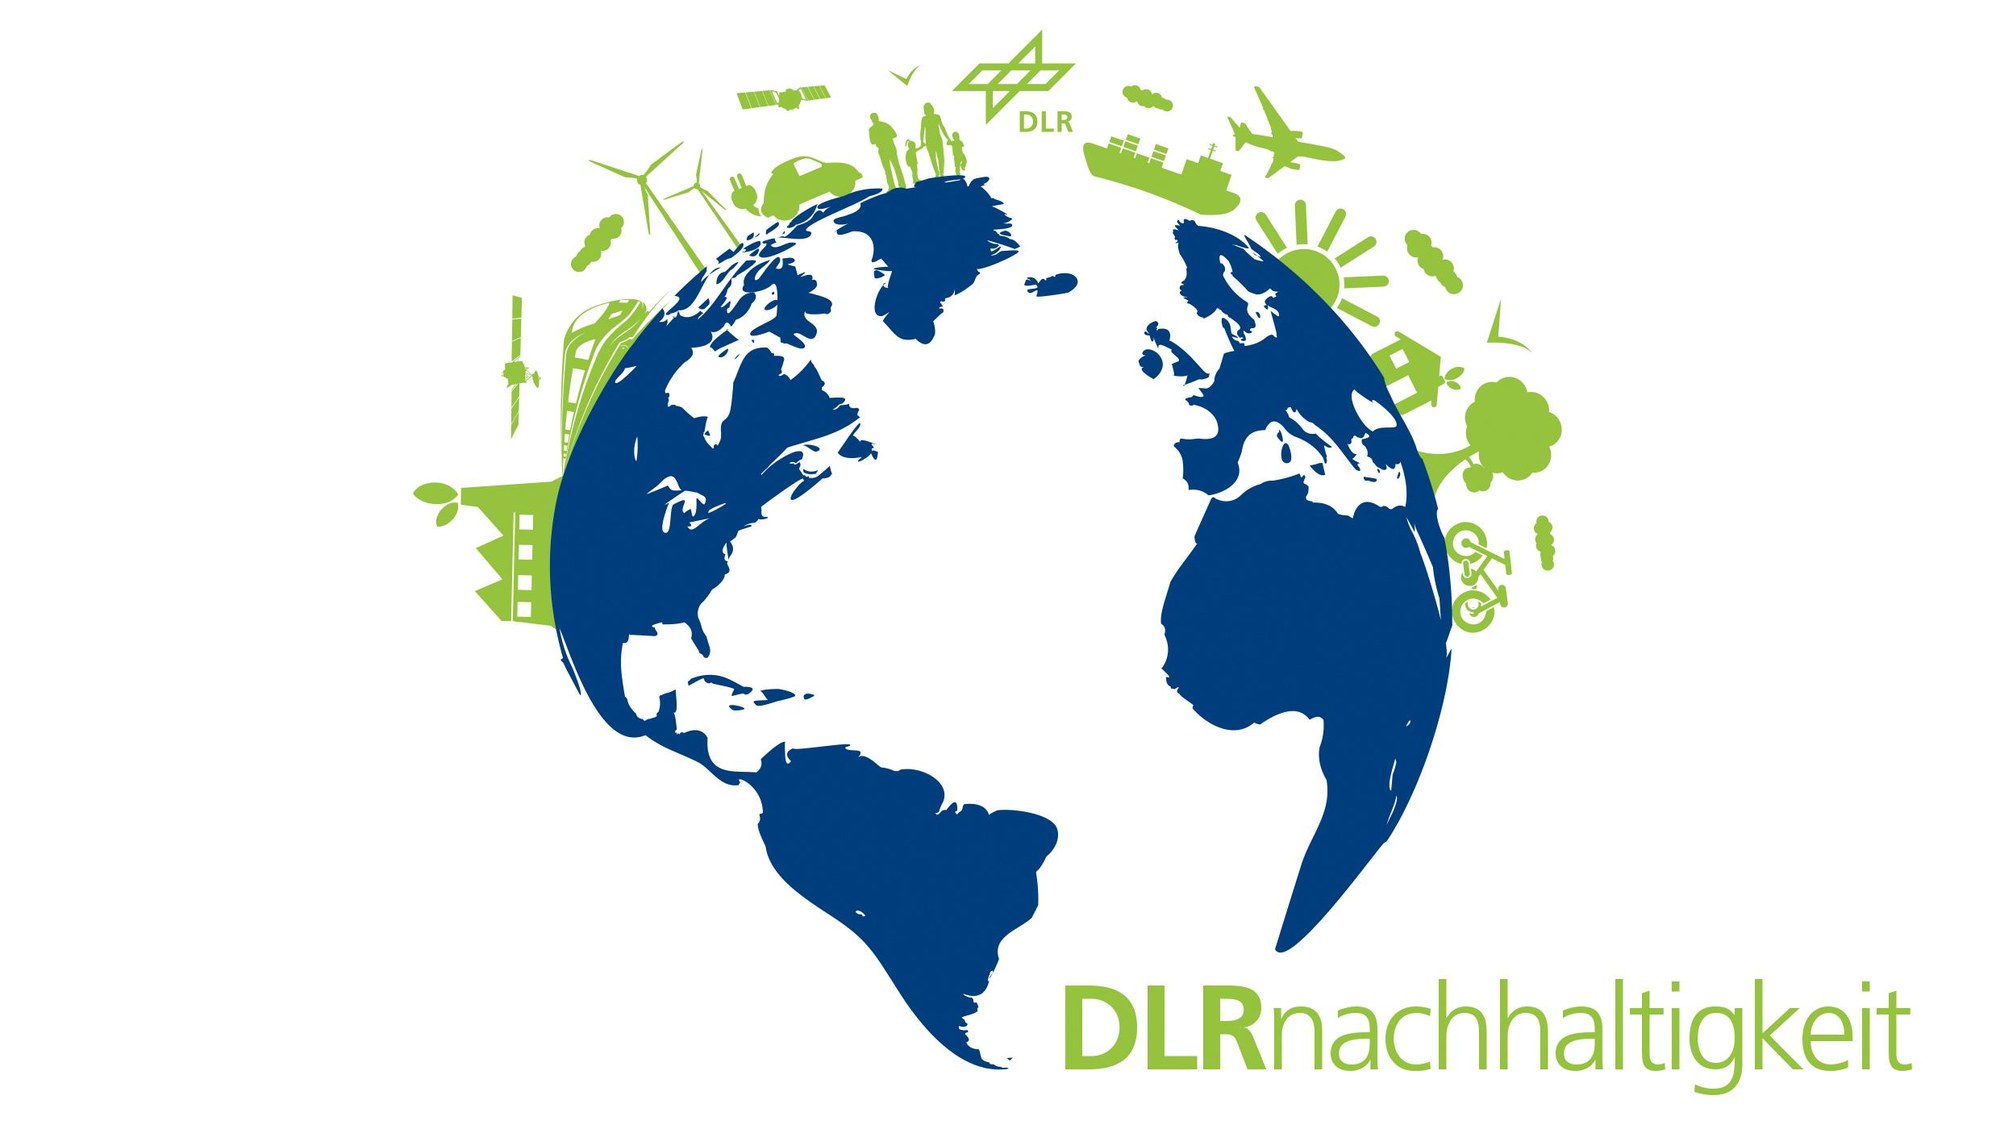 Wort-Bild-Marke des DLR zum Thema DLR-Nachhaltigkeit